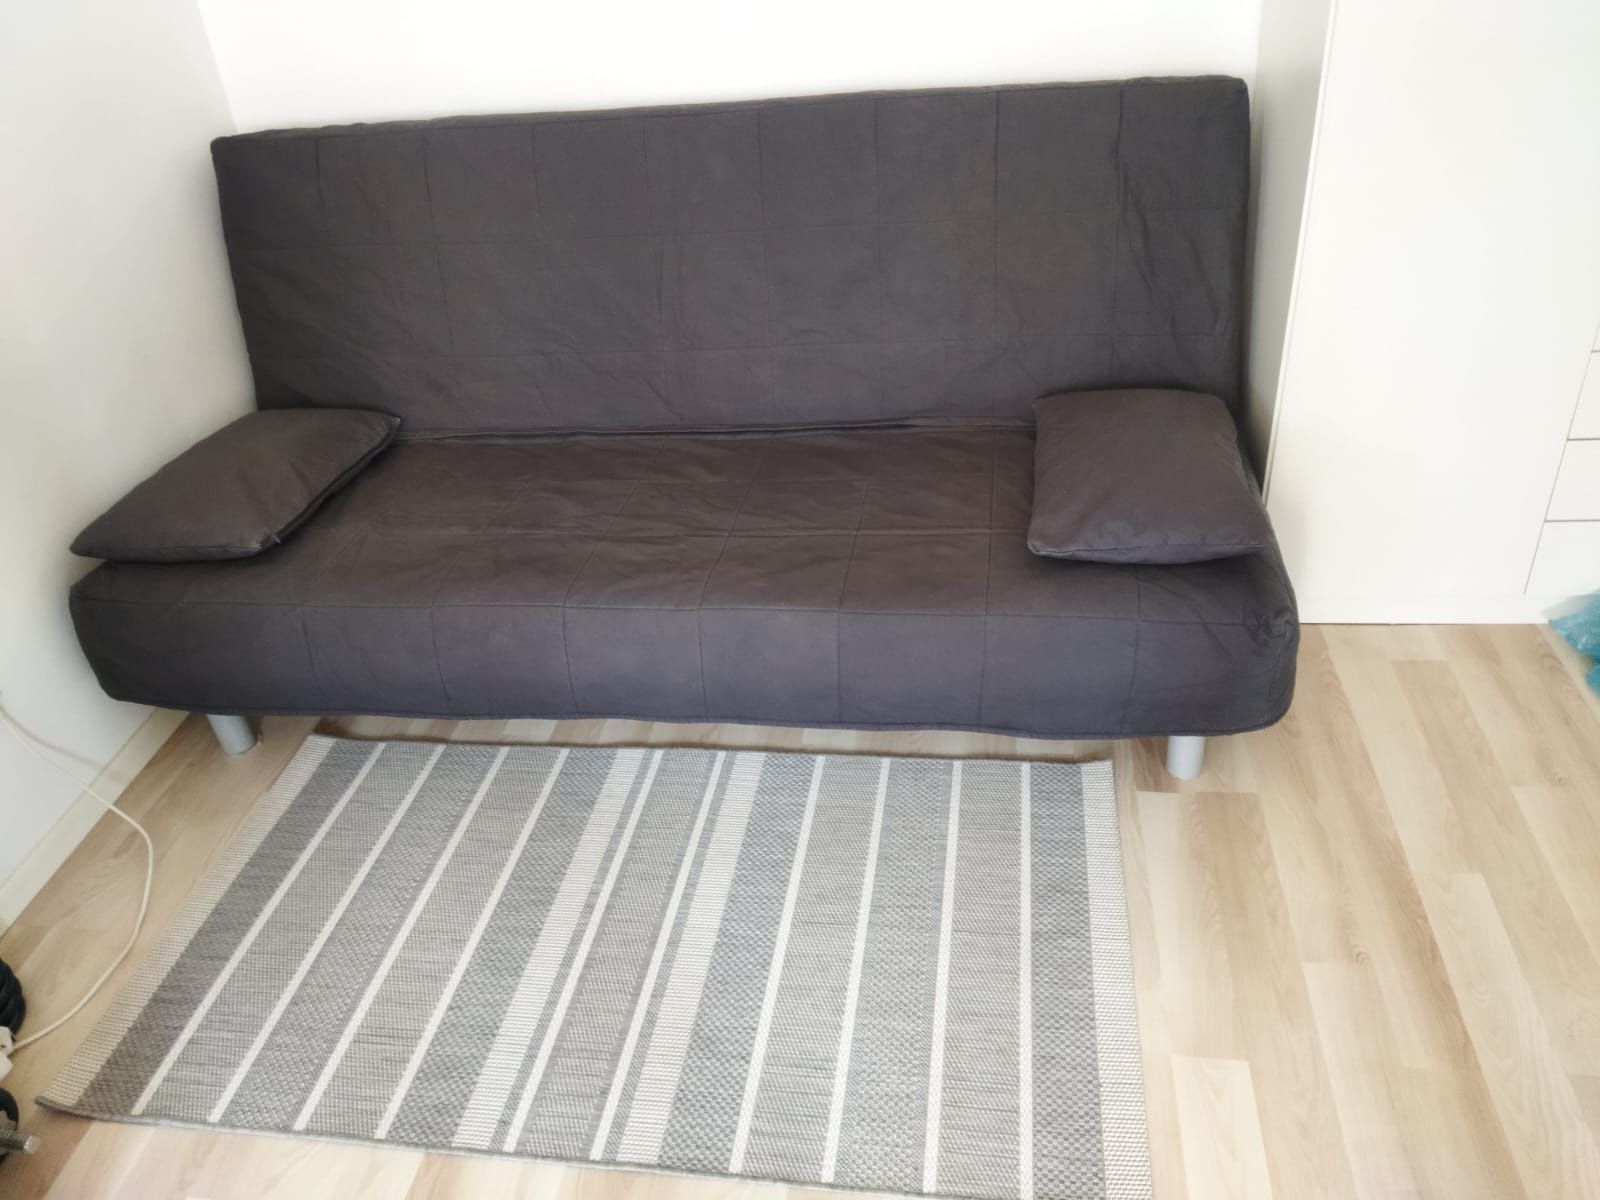 Sofa Ikea bedinge stan jak nowa kanapa łózko